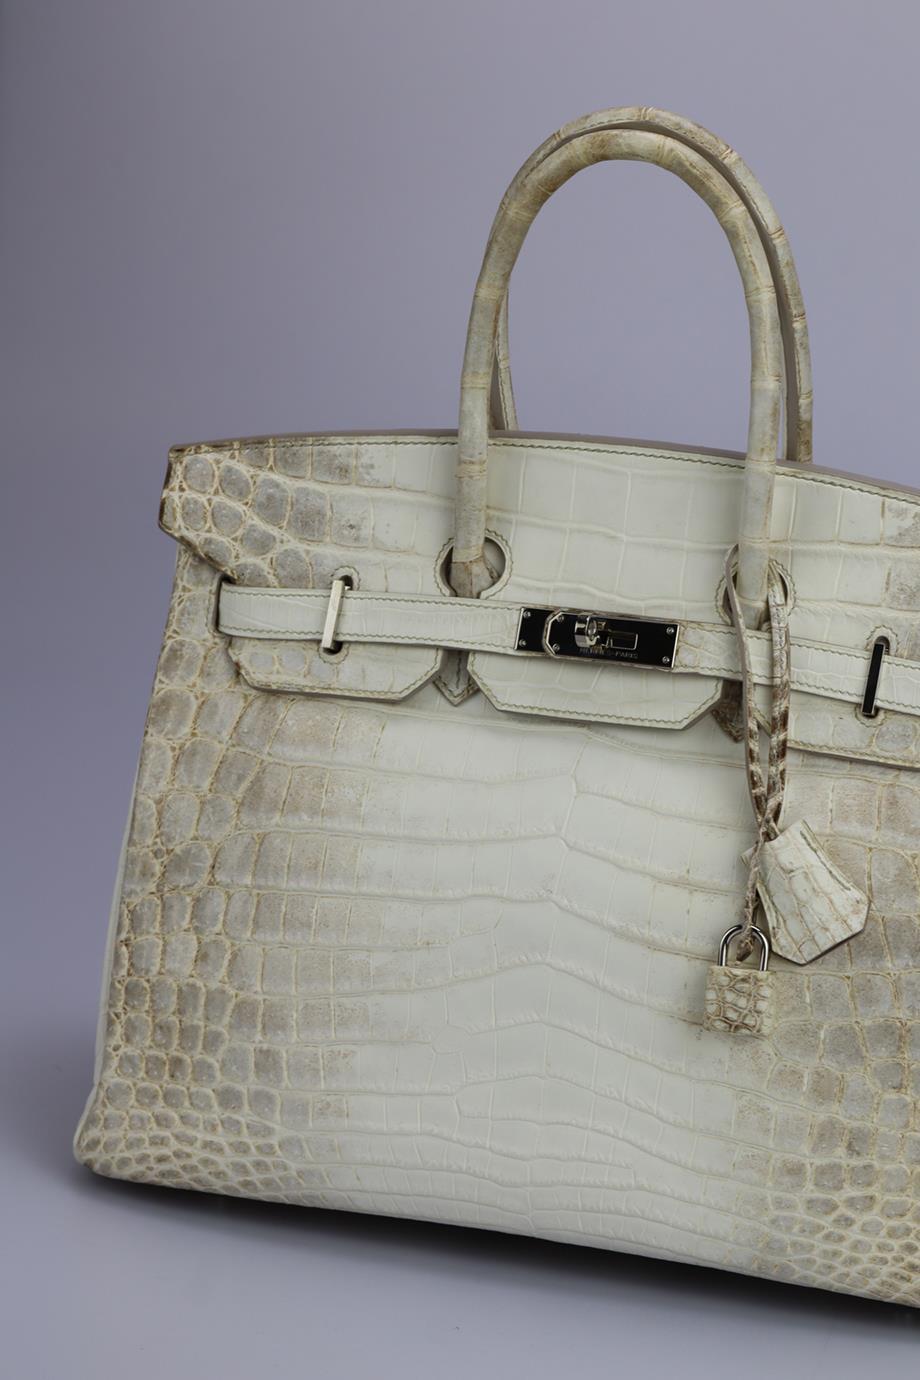 <ul>
<li>Hermès 2011 Birkin 35Cm Himalayan Matte Niloticus Krokodil Tasche.</li>
<li>Modell: Birkin.</li>
<li>Diese 2011 Hermès Birkin 35cm Handtasche wurde in Frankreich hergestellt und besteht aus mattem Niloticus Krokodil in Himalaya und Leder im